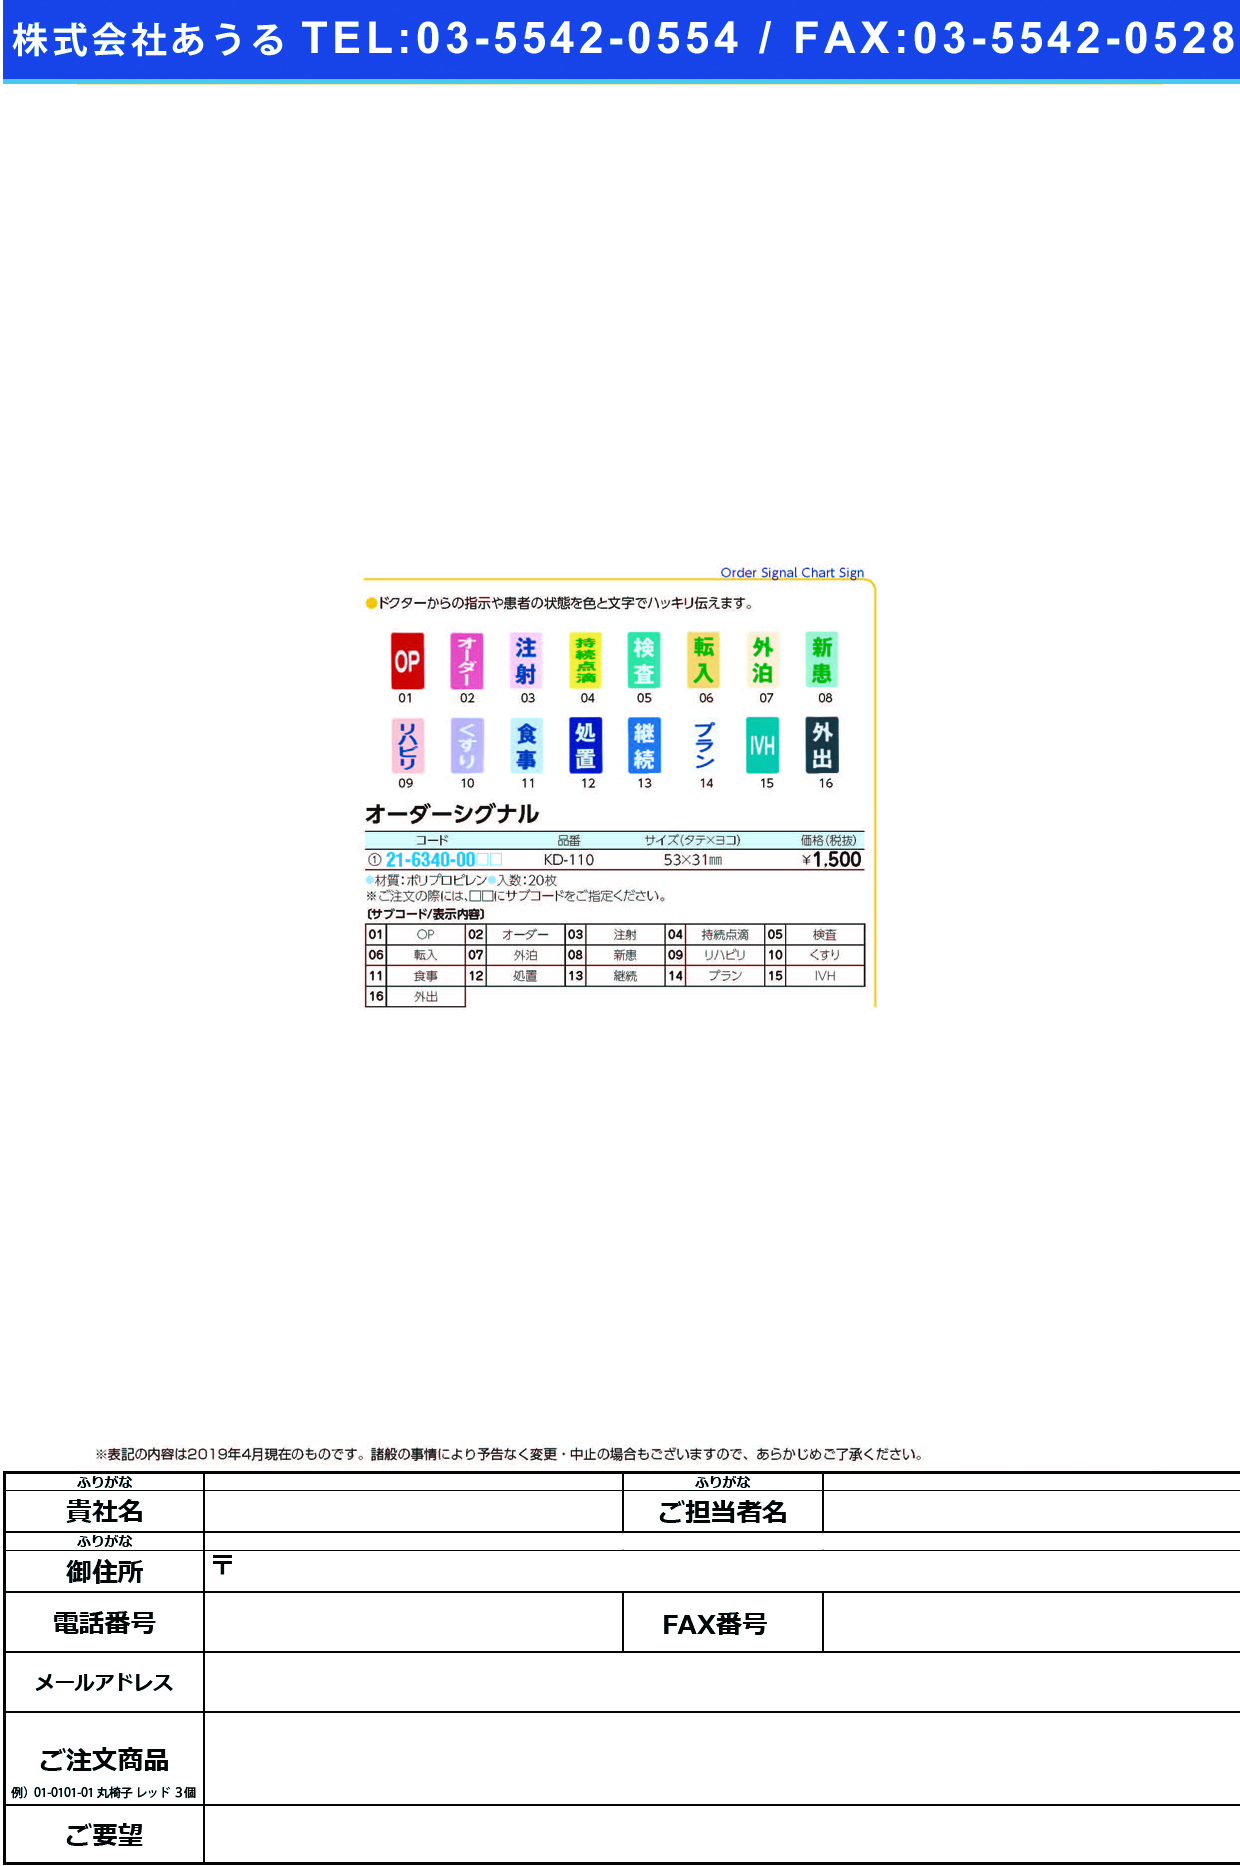 (21-6340-00)オーダーシグナル KD-110(20ﾏｲｲﾘ) ｵｰﾀﾞｰｼｸﾞﾅﾙ ＯＰ(ケルン)【1袋単位】【2019年カタログ商品】